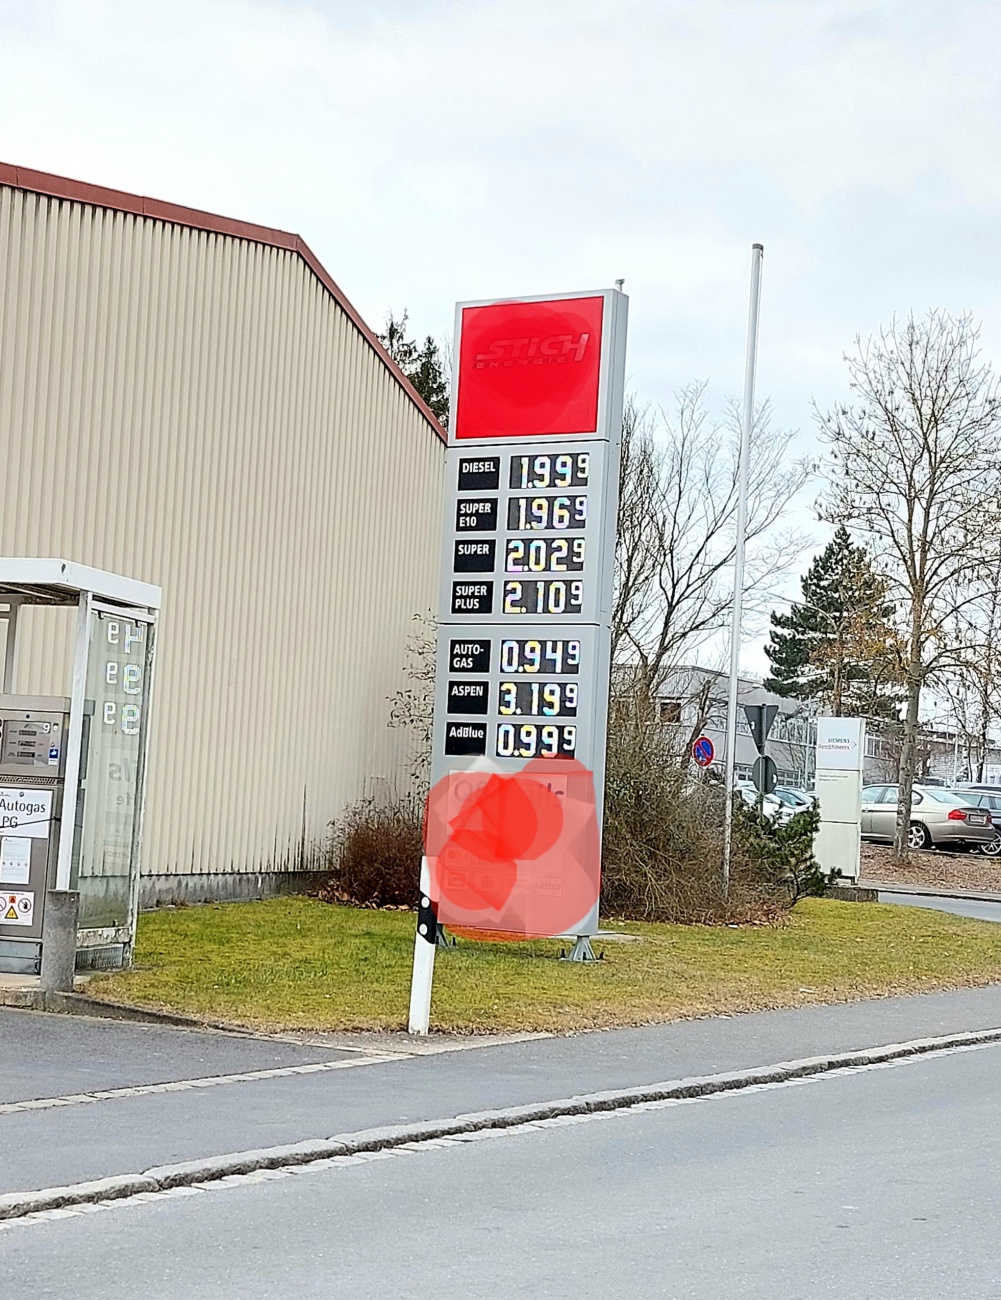 Foto: Martin Zehrer - Benzin-Preise bzw. Kraftstoff-Preise am 7. März 2022 in Kemnath...<br />
<br />
In Erbendorf soll der Liter Diesel heute Früh über 2 Euro gelegen haben...<br />
<br />
DAX: 12.781,22 -313,32 